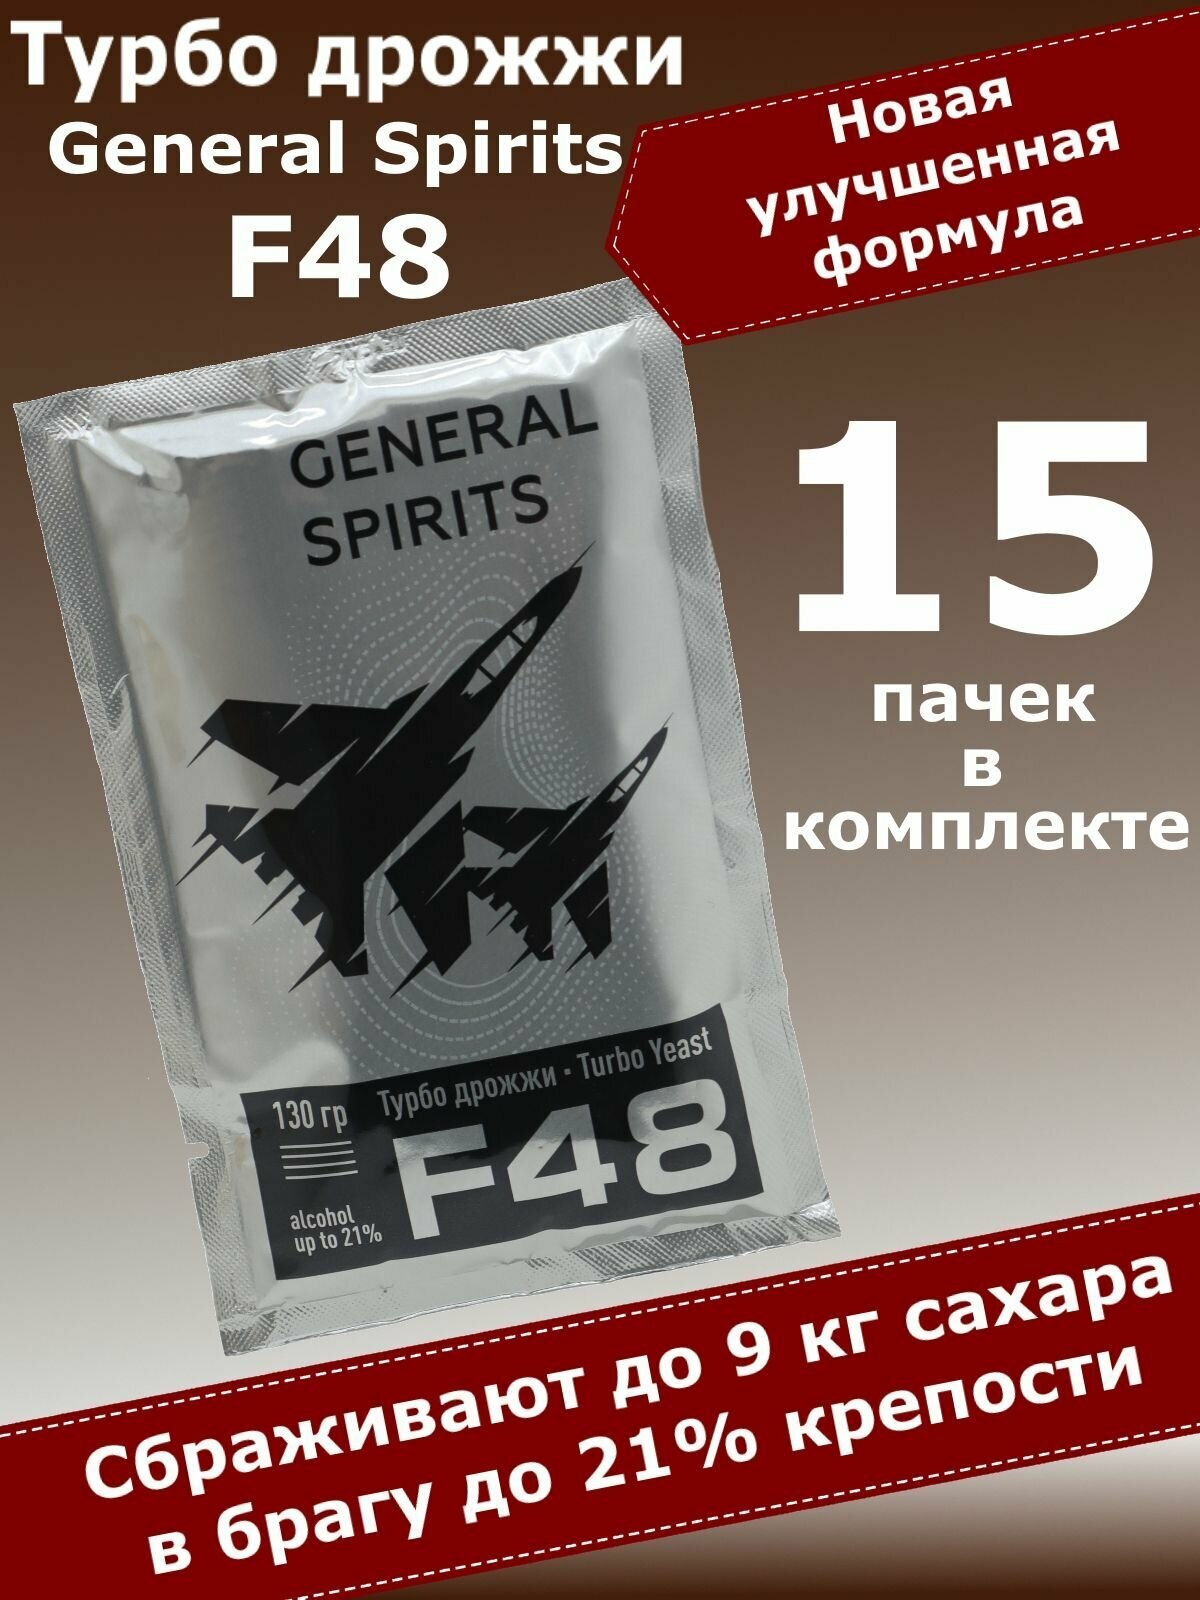 Спиртовые турбо дрожжи для самогона General Spirits F48, 130 гр (15 пачек)